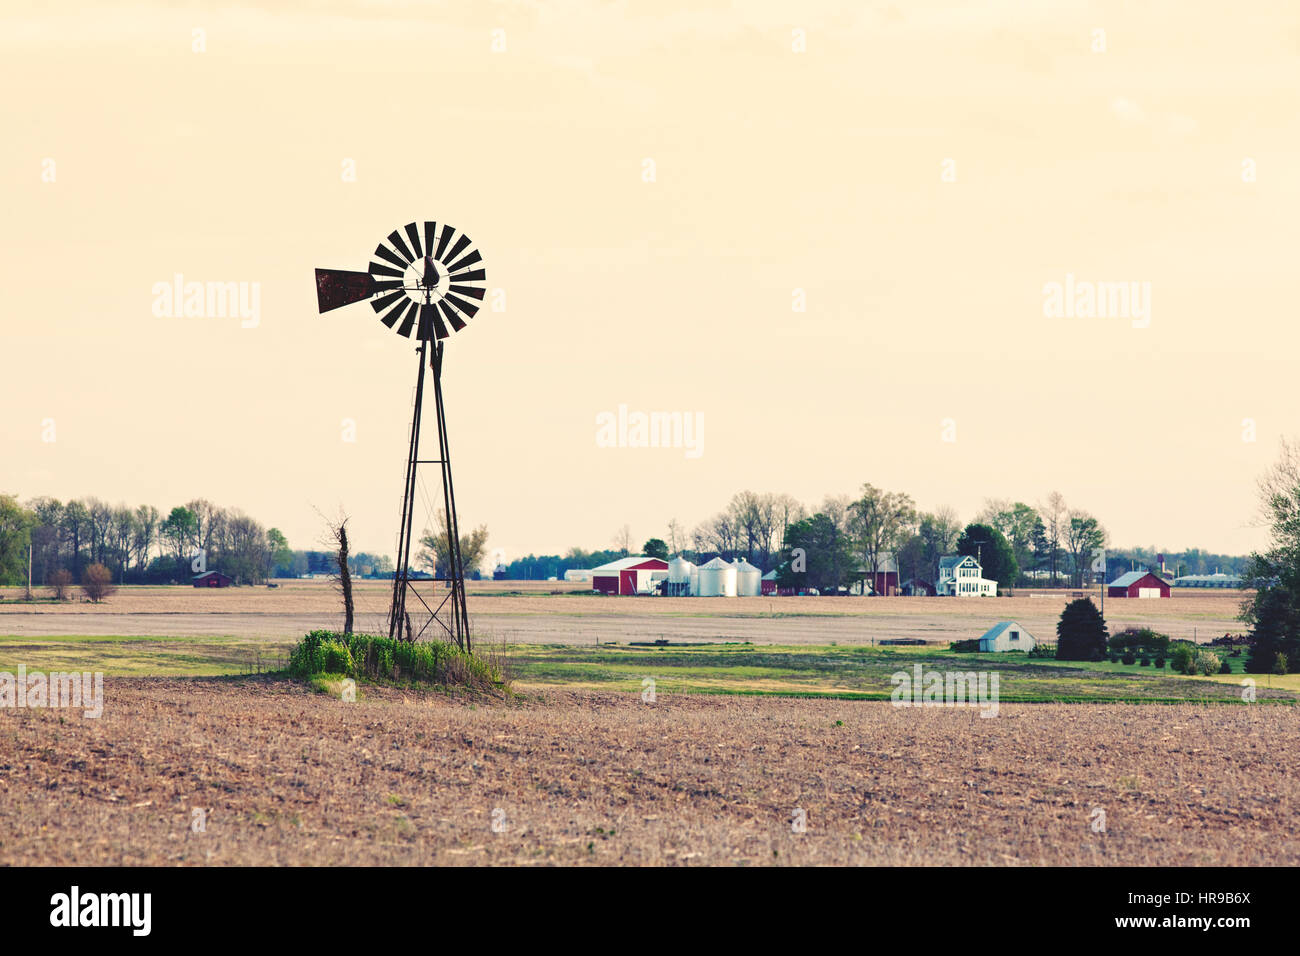 Windpumpe in einem landwirtschaftlichen Bereich. Midwest Bauernhof. Stockfoto